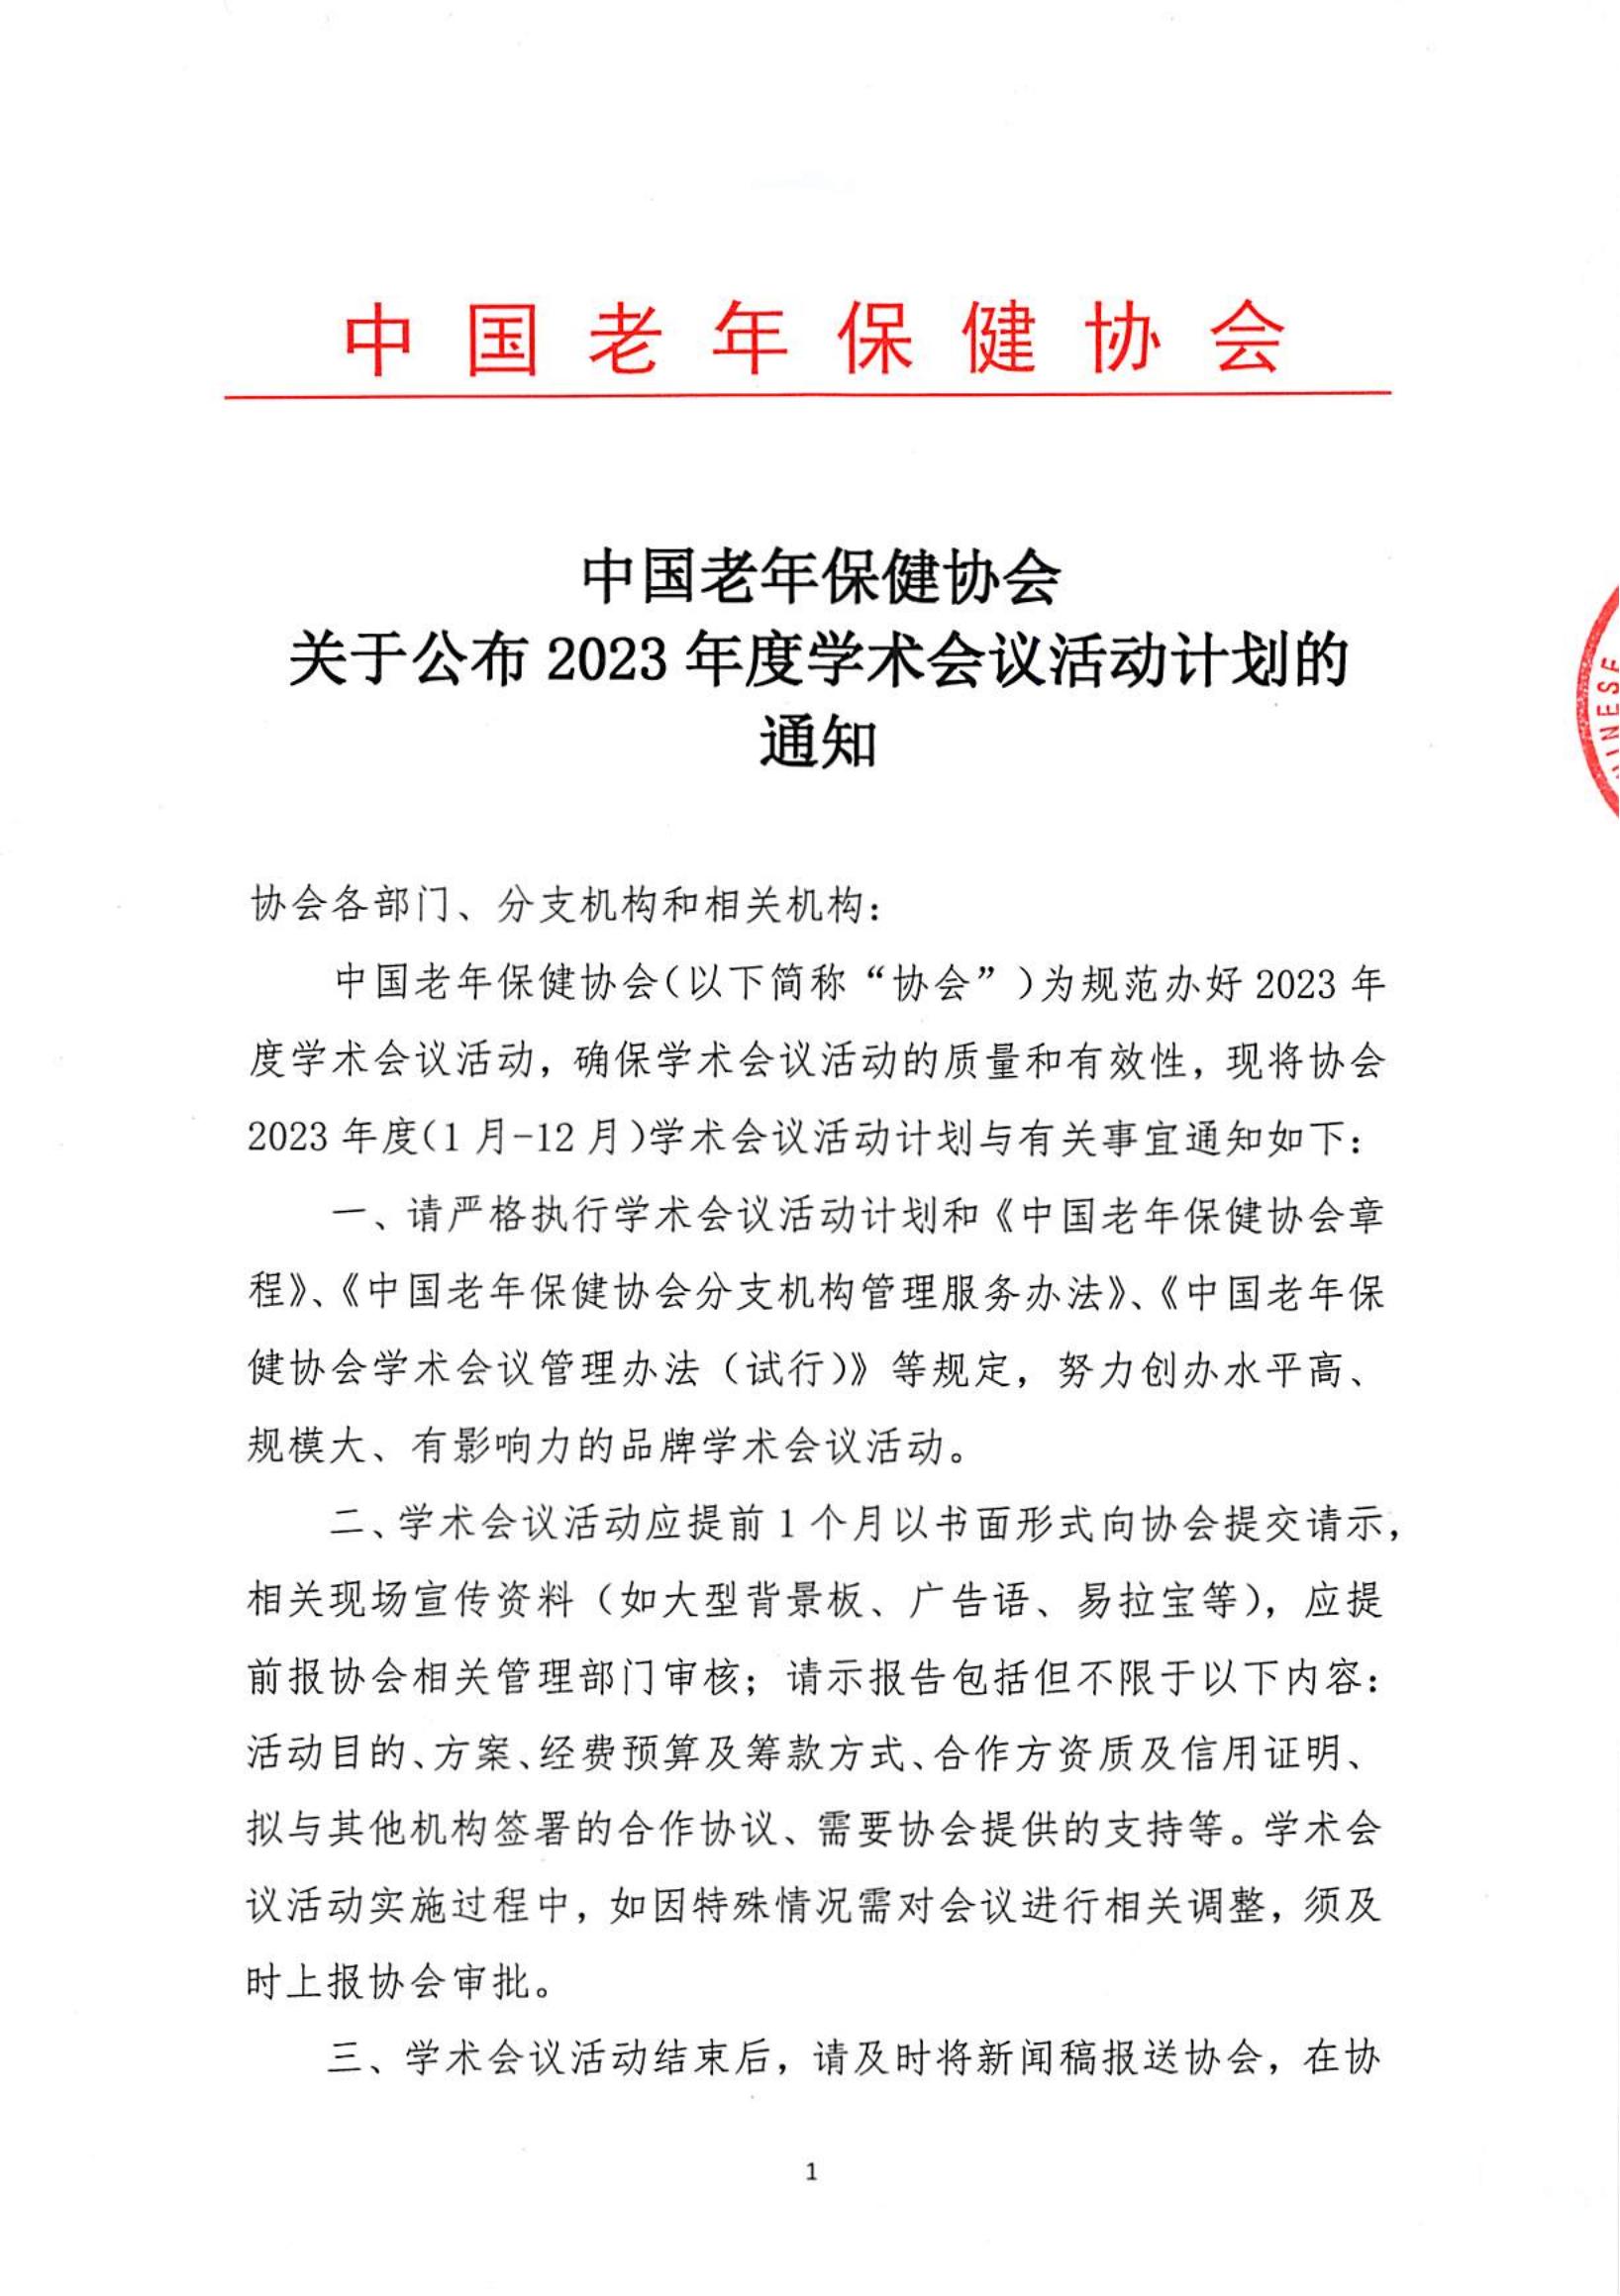 中国老年保健协会关于公布2023年度学术会议活动计划的通知(2)_00.jpg